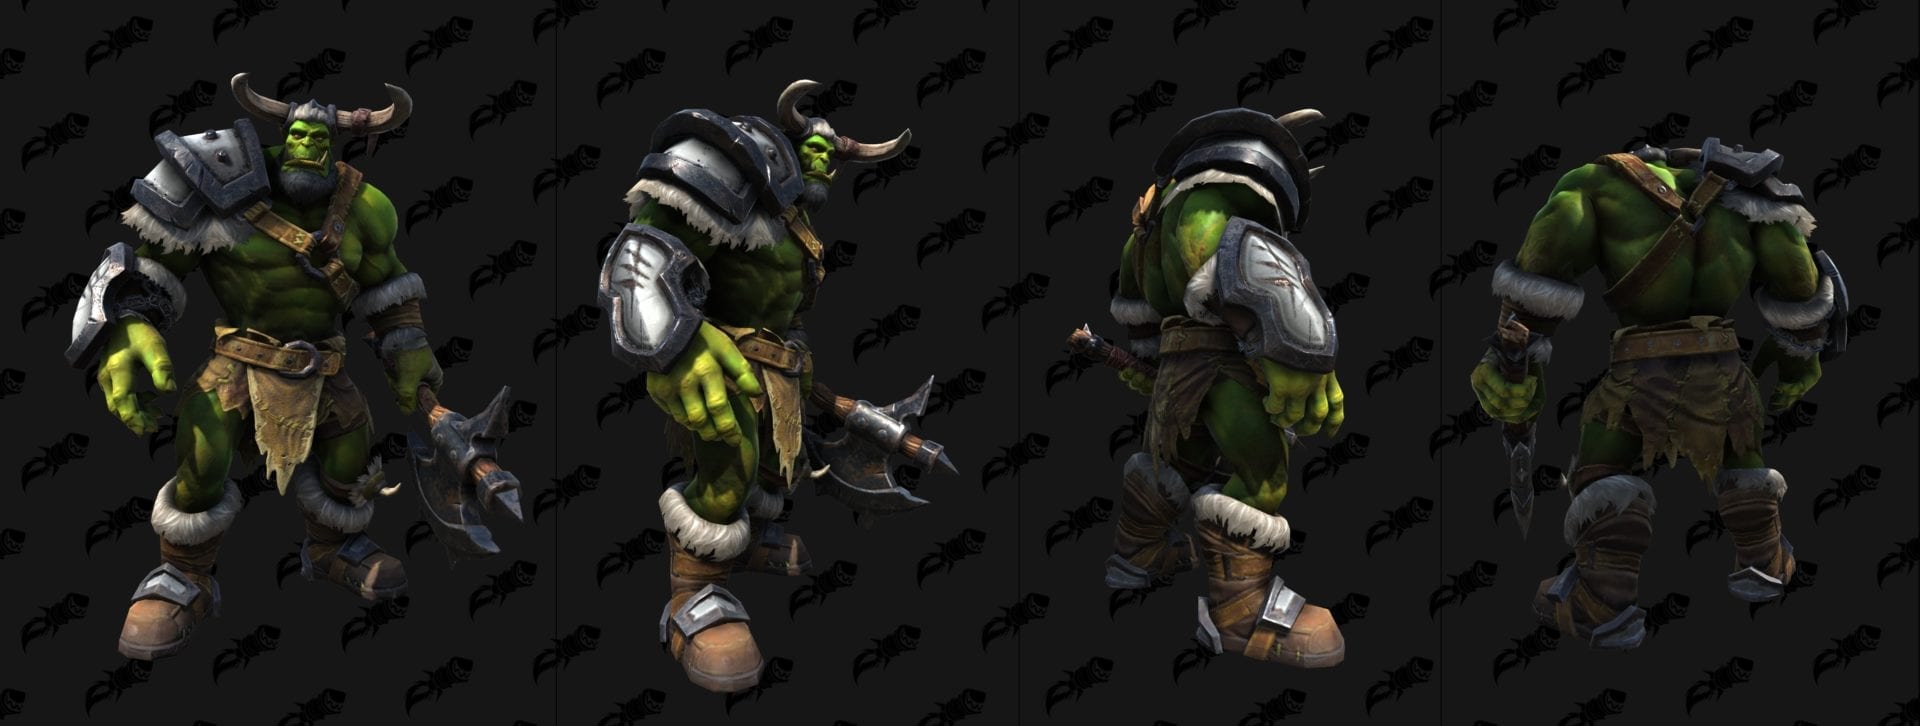 Warcraft III Reforged Modèles des unités jouables et spéciales orcs Les Chroniques d Azeroth